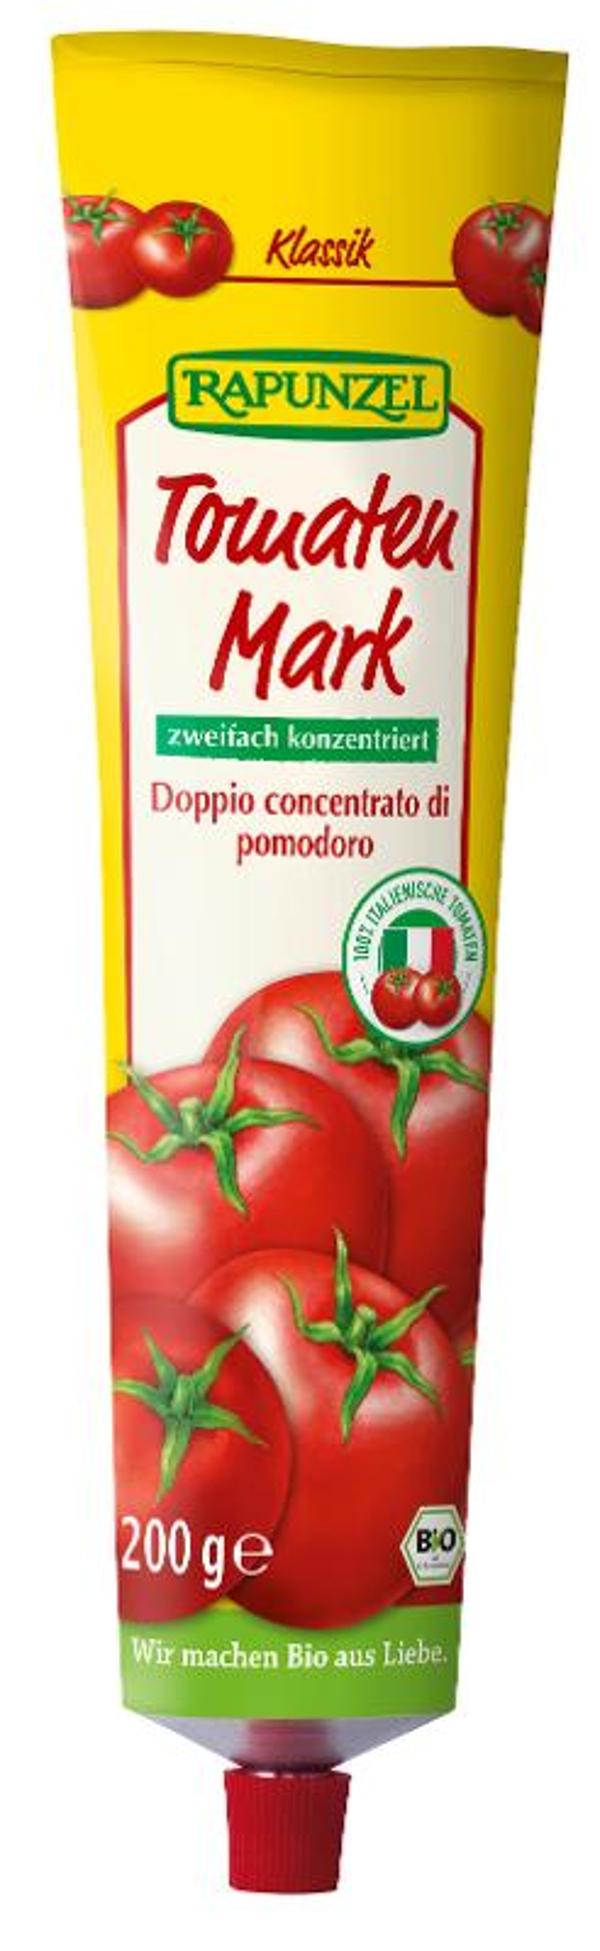 Produktfoto zu Tomatenmark, zweifach konzentriert